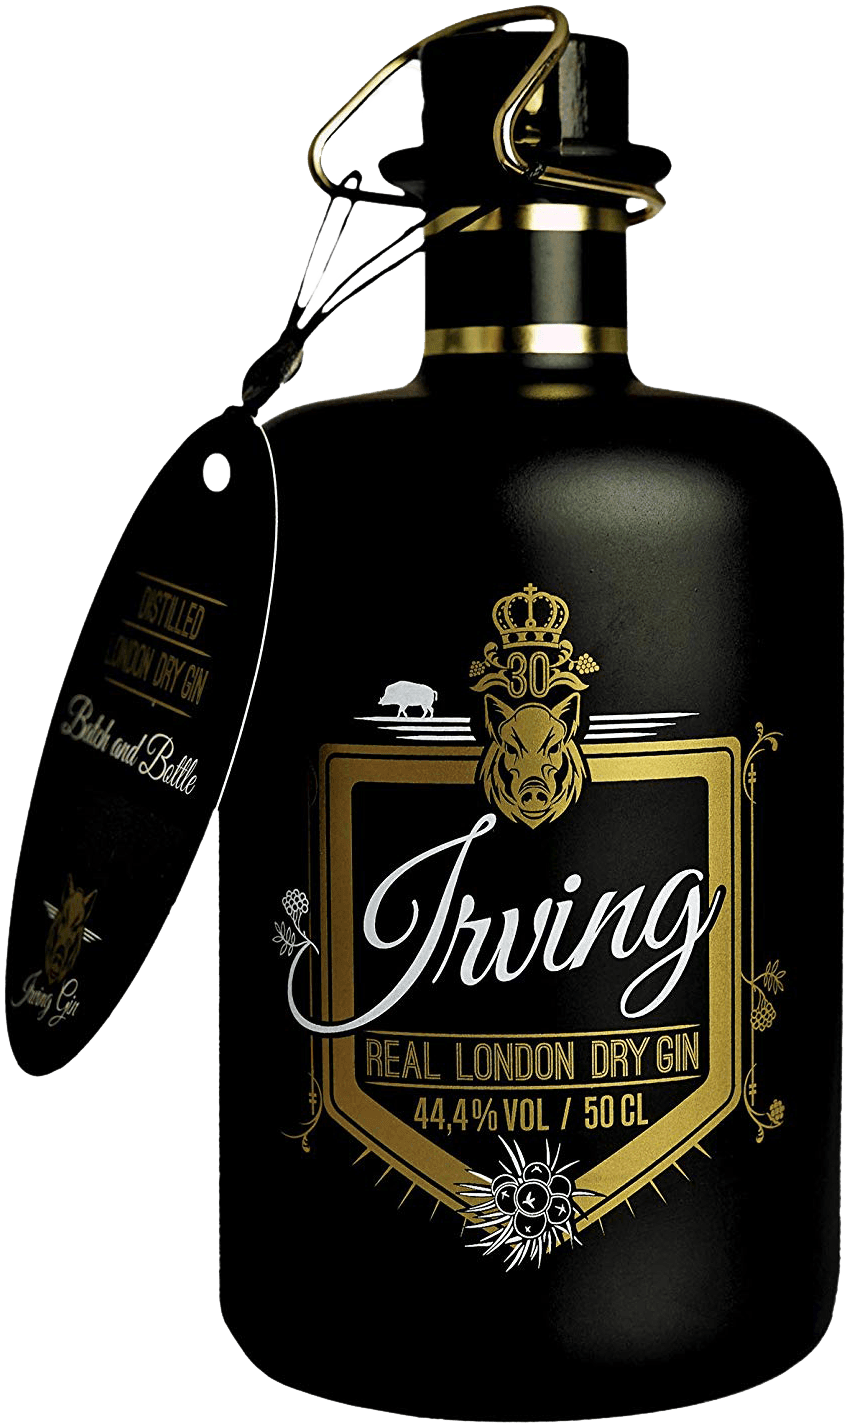 "Flasche Irving Gin mit 16 Botanicals und edlem Design"